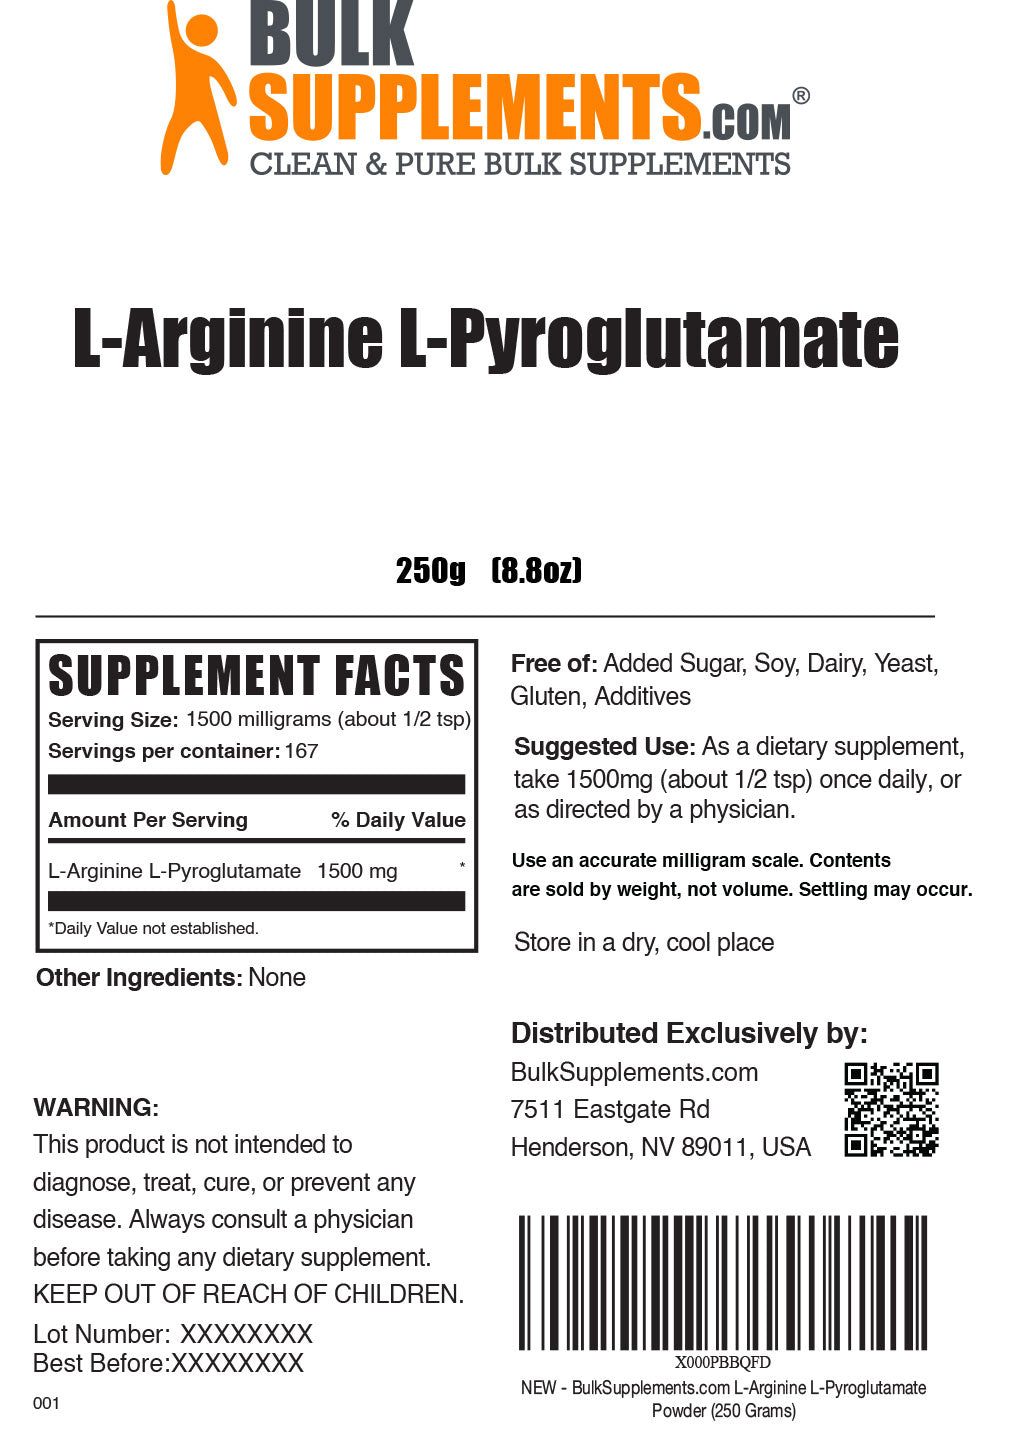 L-Arginine L-Pyroglutamate powder label 250g